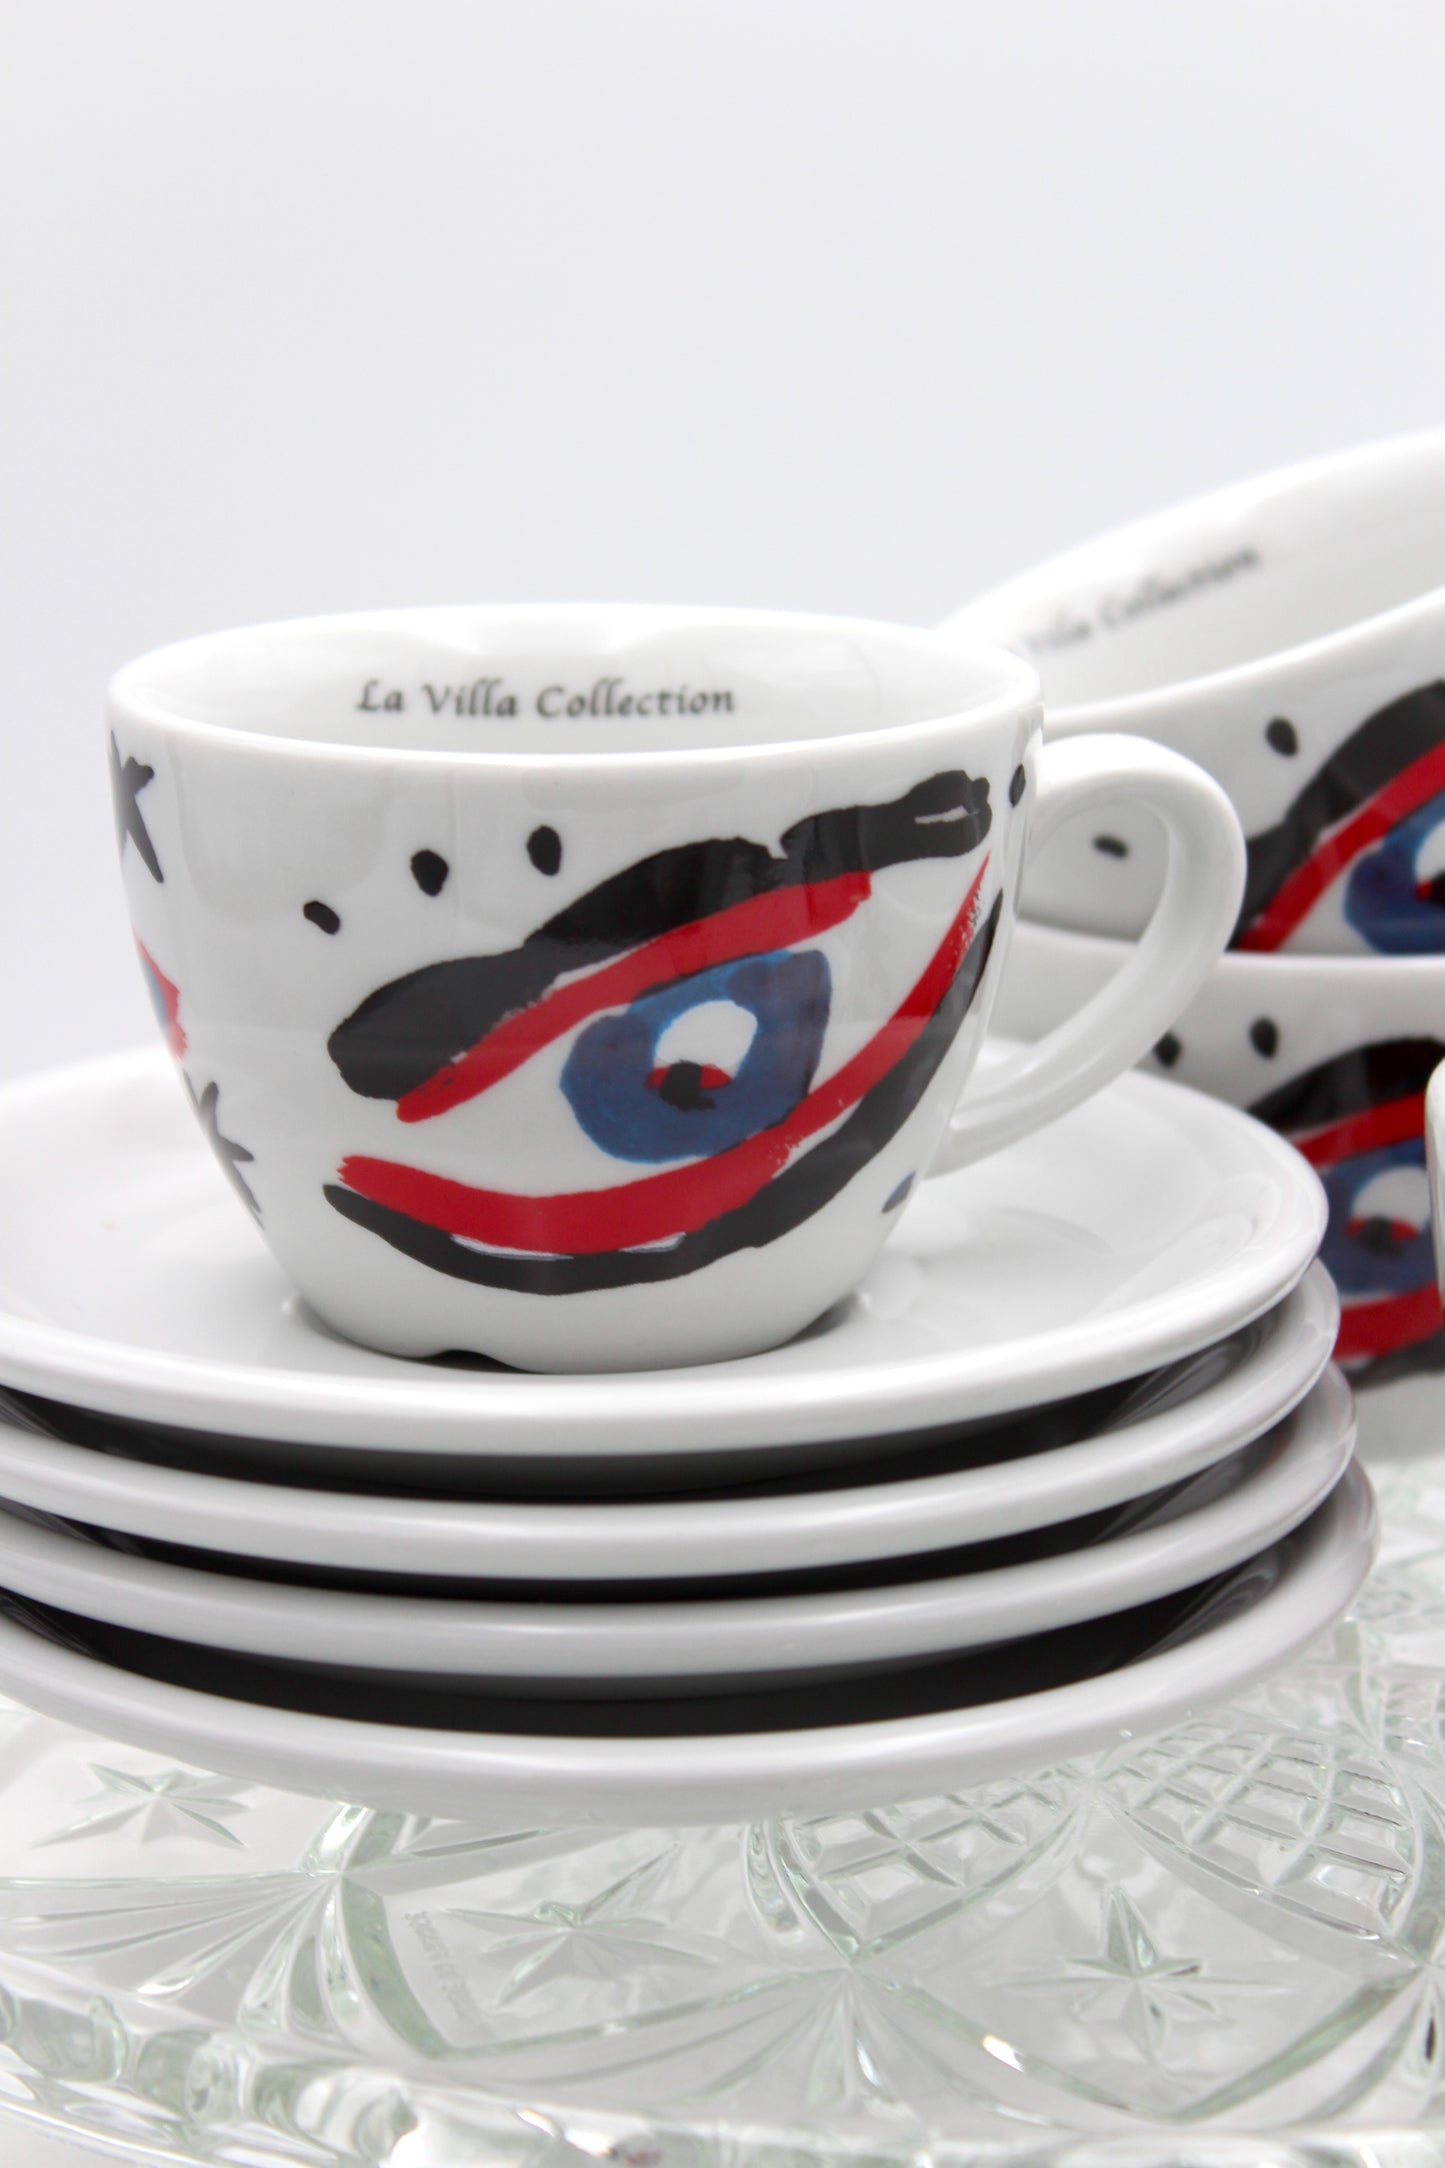 La Villa Collection - Cappuccino kopper, 4 stk.